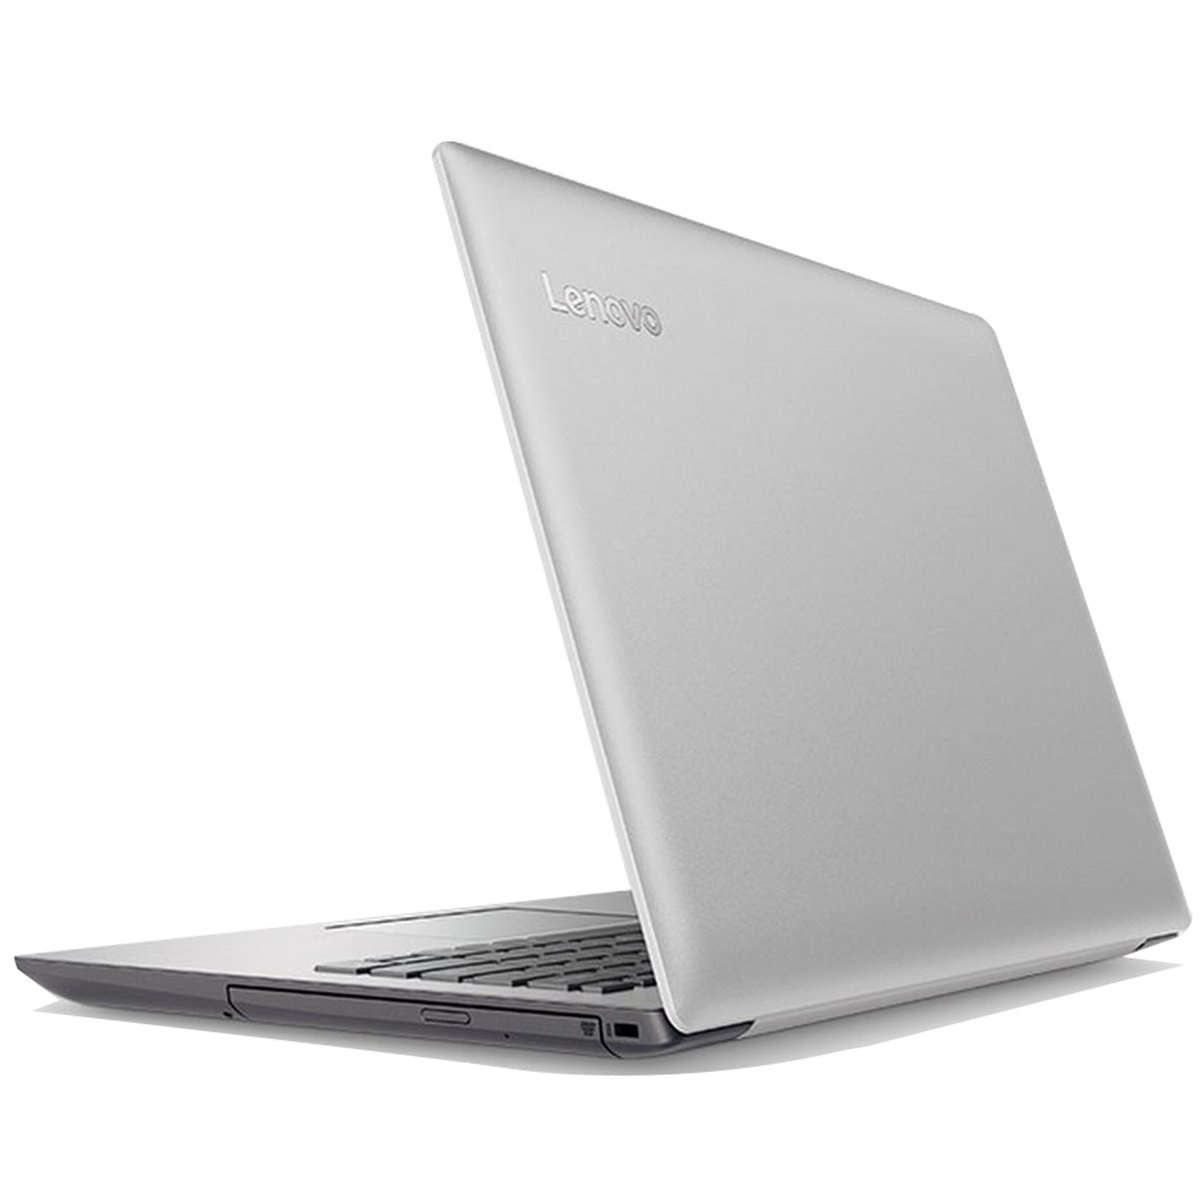 Lenovo Notebook IdeaPad 320 80XG003-QAD Core i3 Platinum Gray